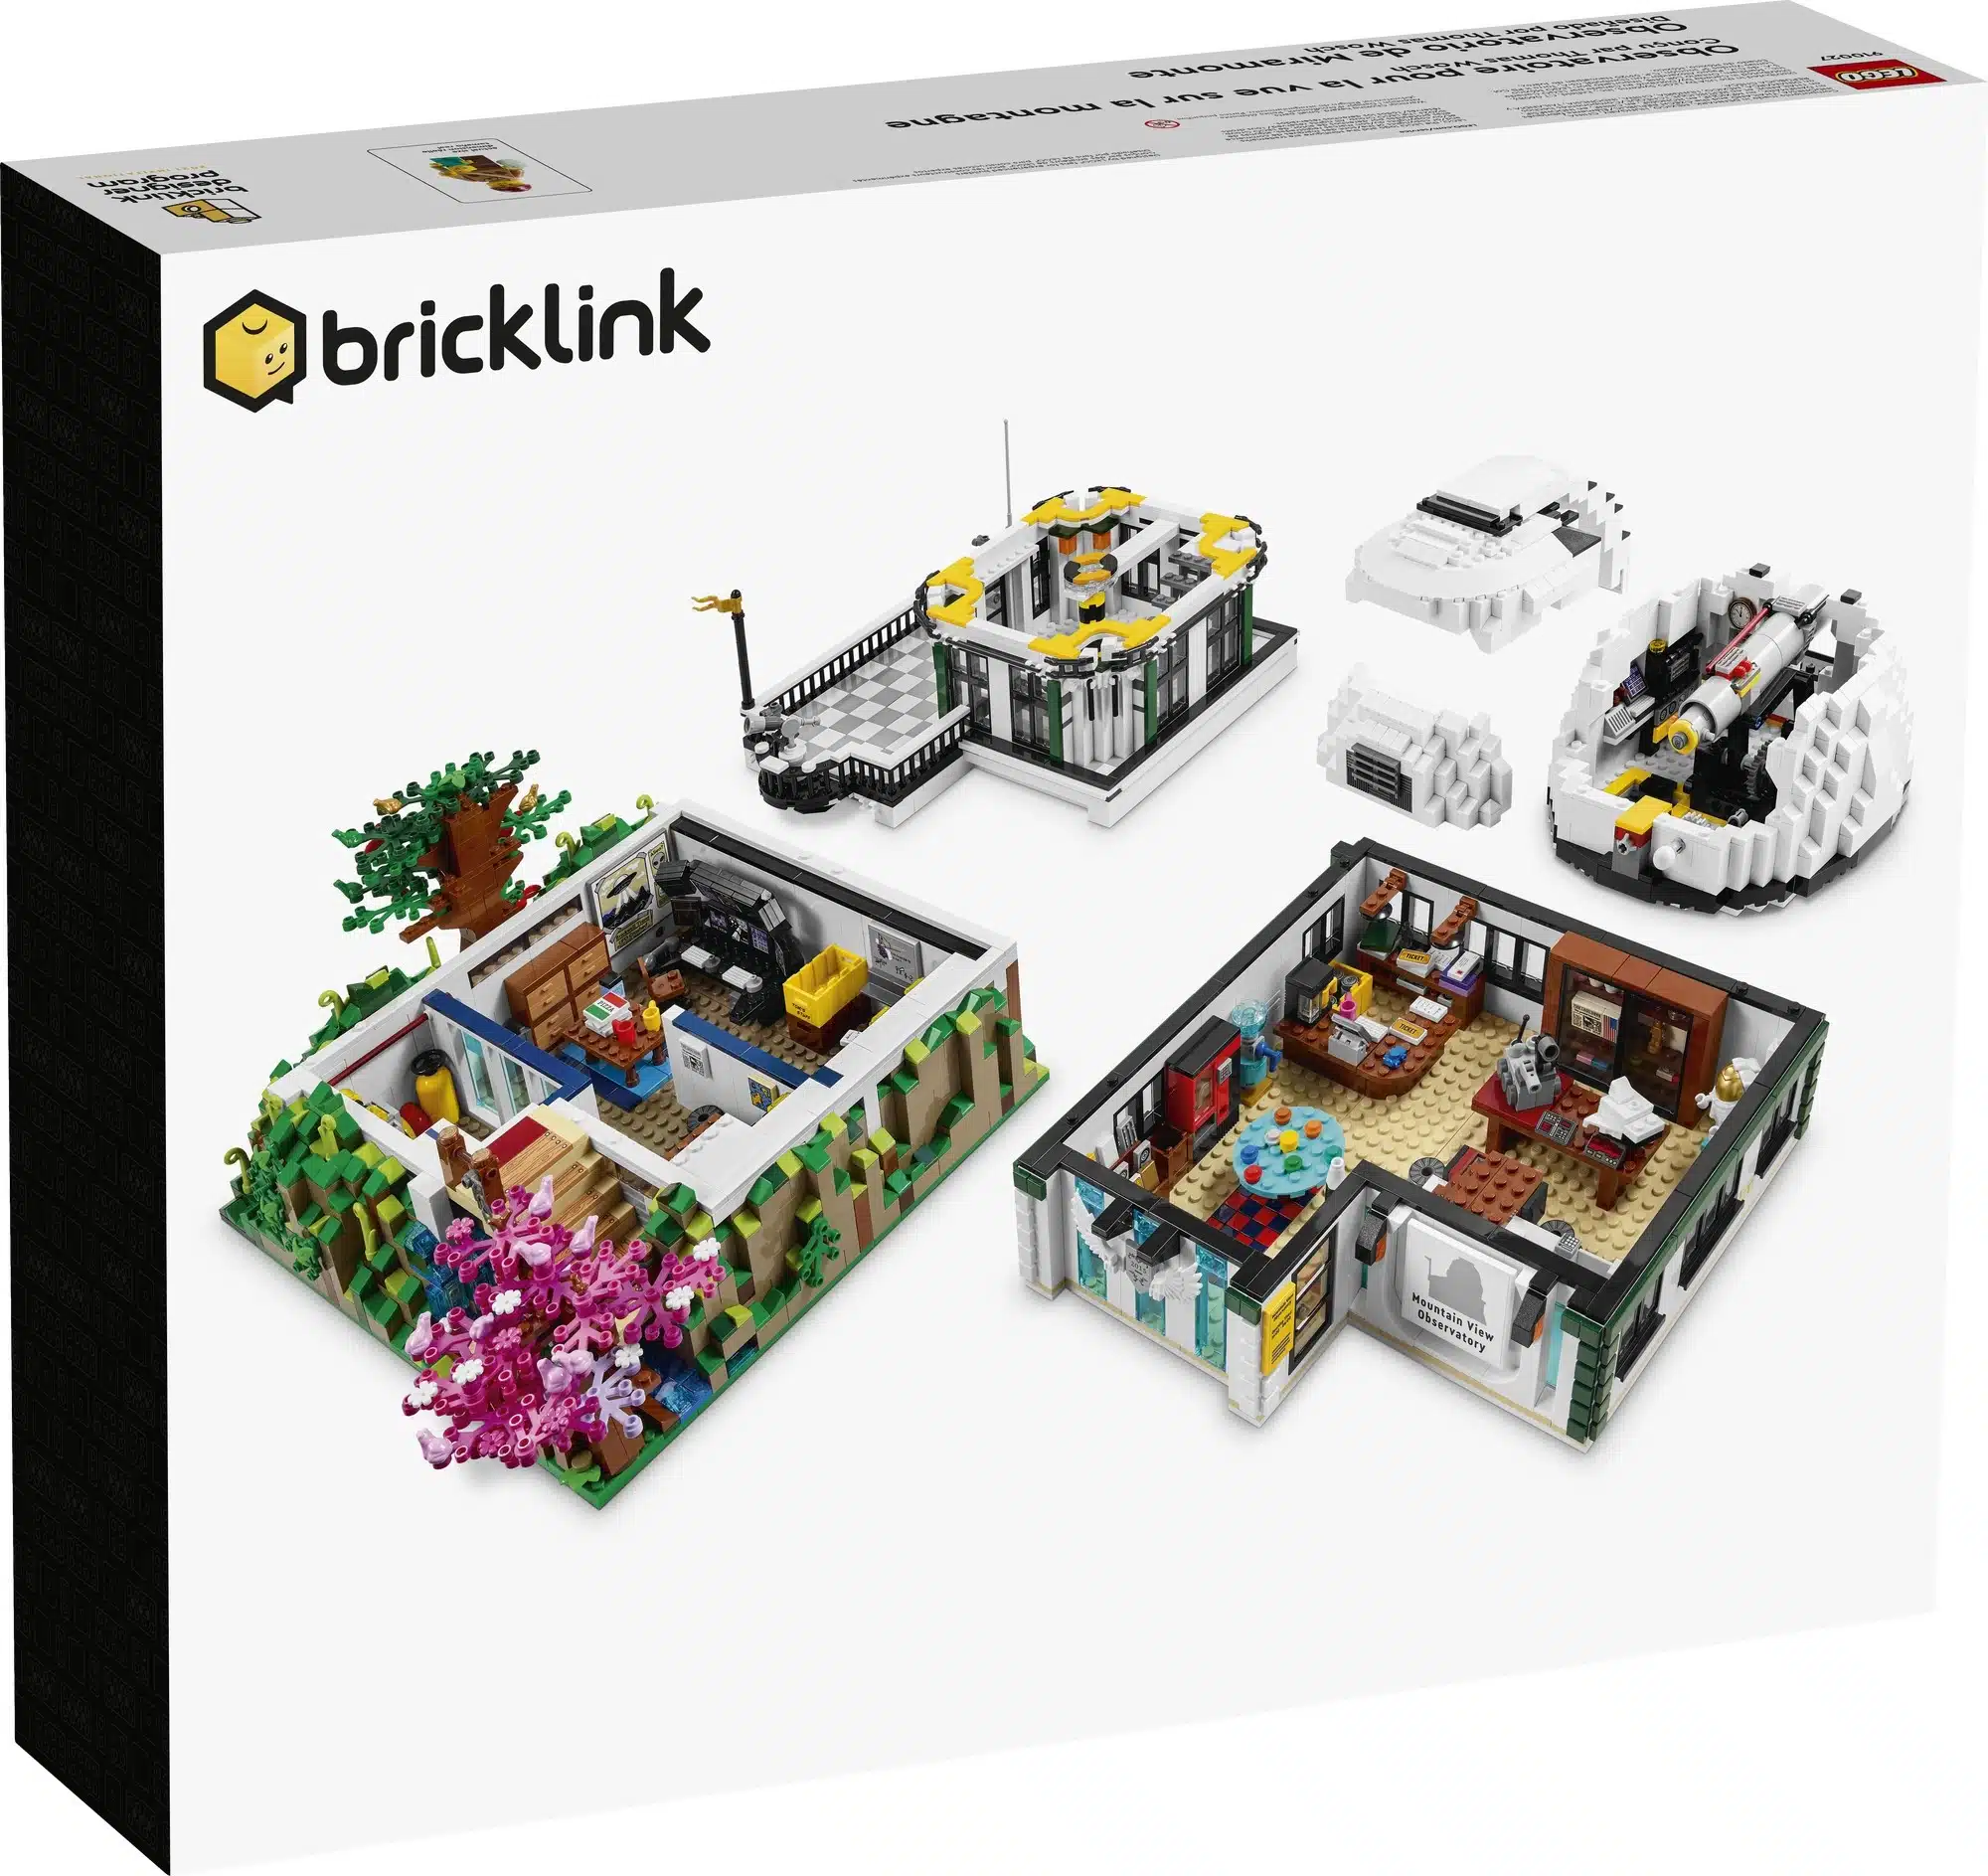 第3弾ブリリン・いやデザイナー・プログラム公式画像公開 | レゴ(R)アイデア不合格作品をクラウドファンディングでキット化するプロジェクト